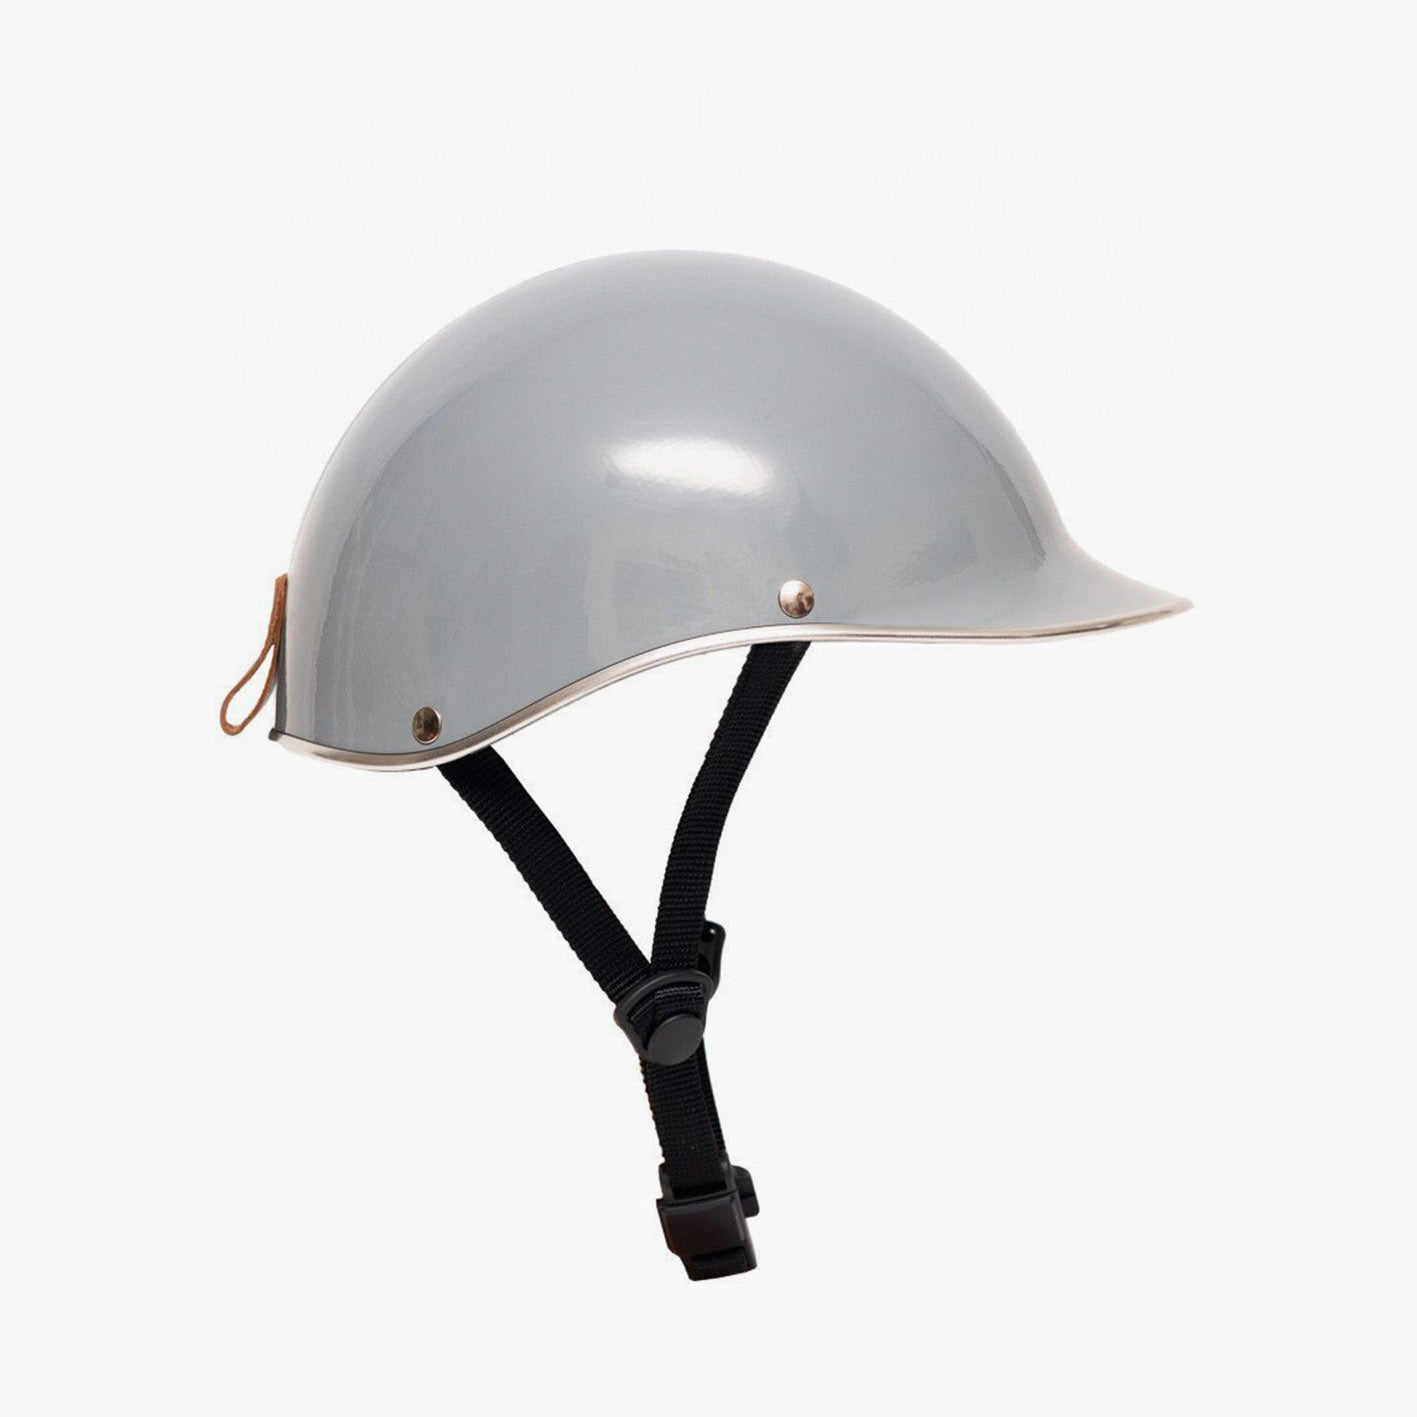 Dashel Carbon Fibre Edition Helmet